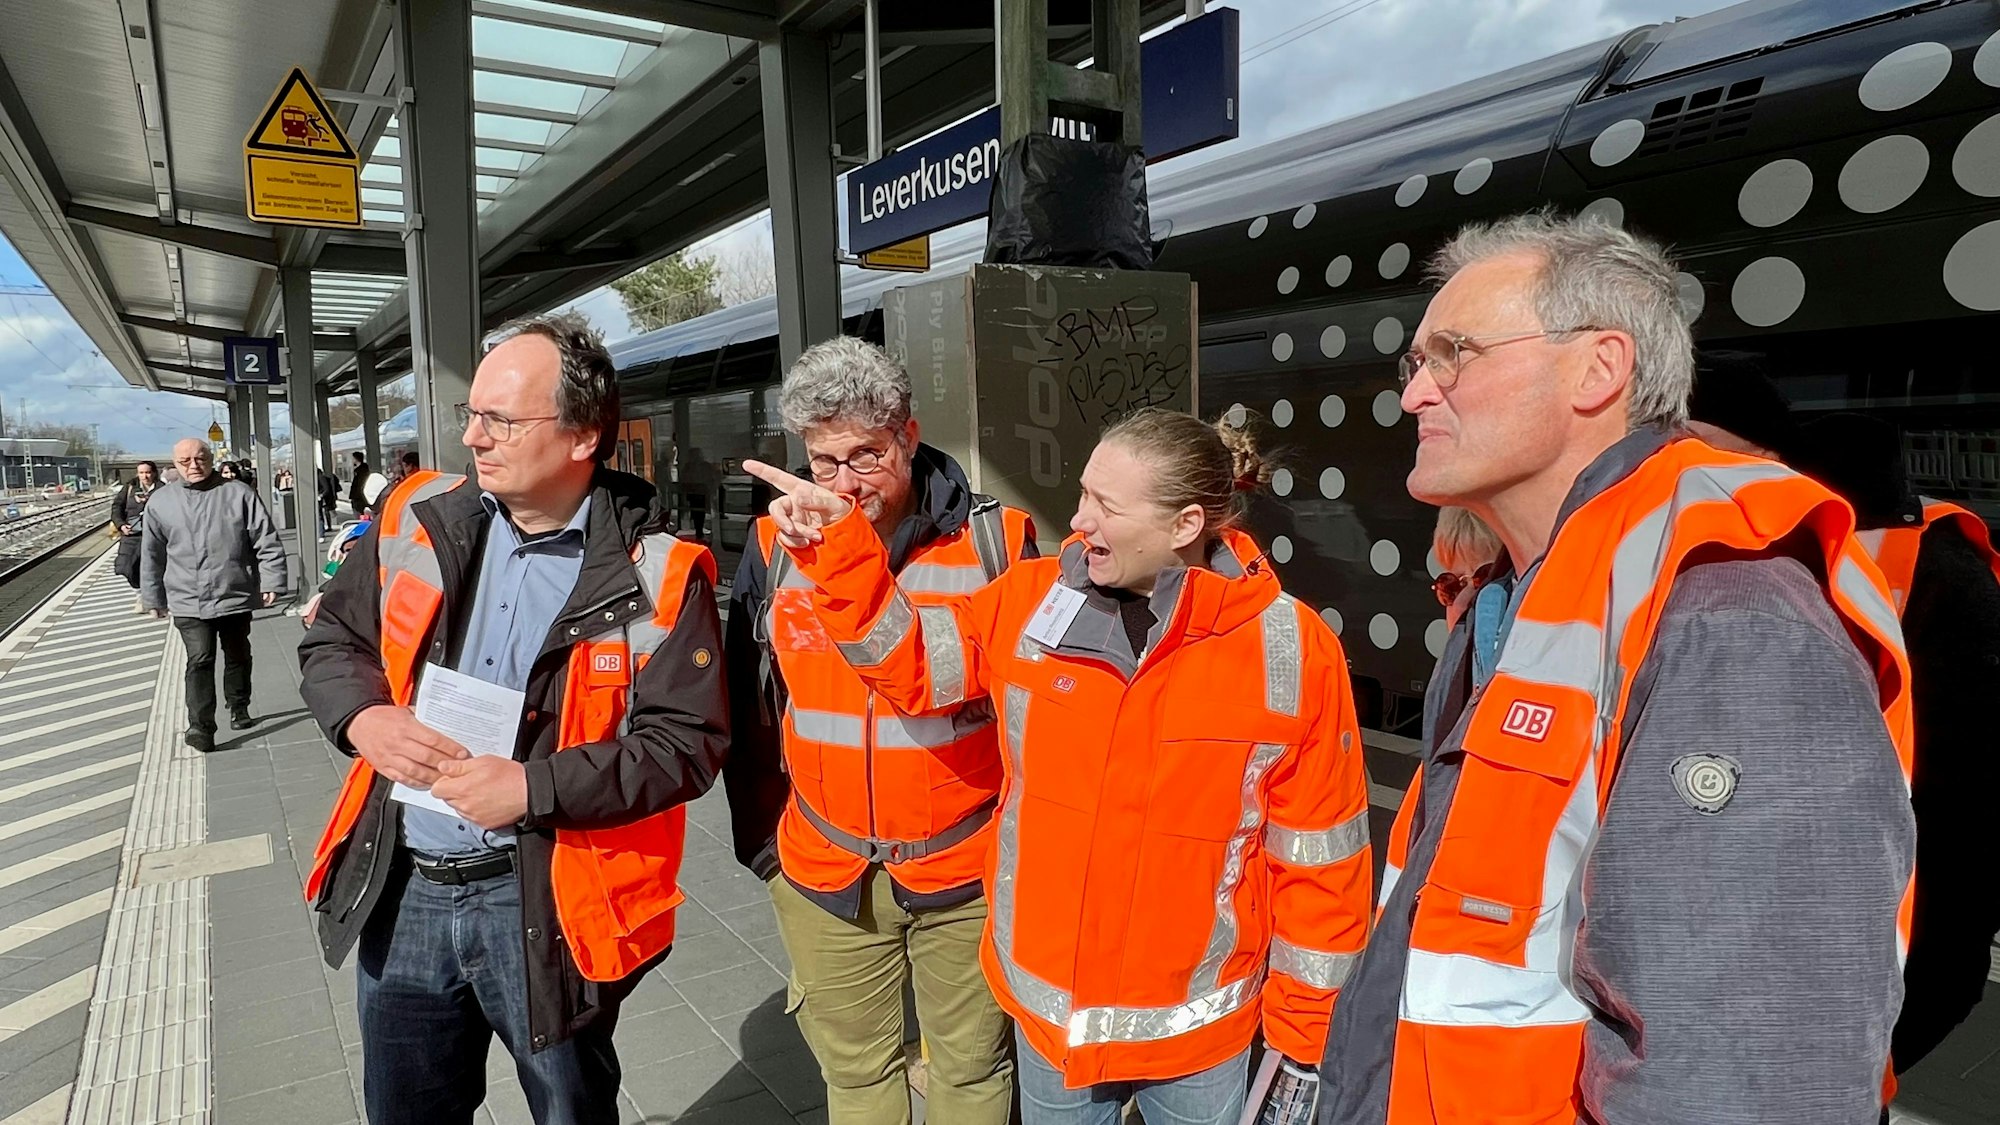 Baustellenführung im Bahnhof Leverkusen Mitte, Anke Reichartz erläutert Interessierten die Arbeiten